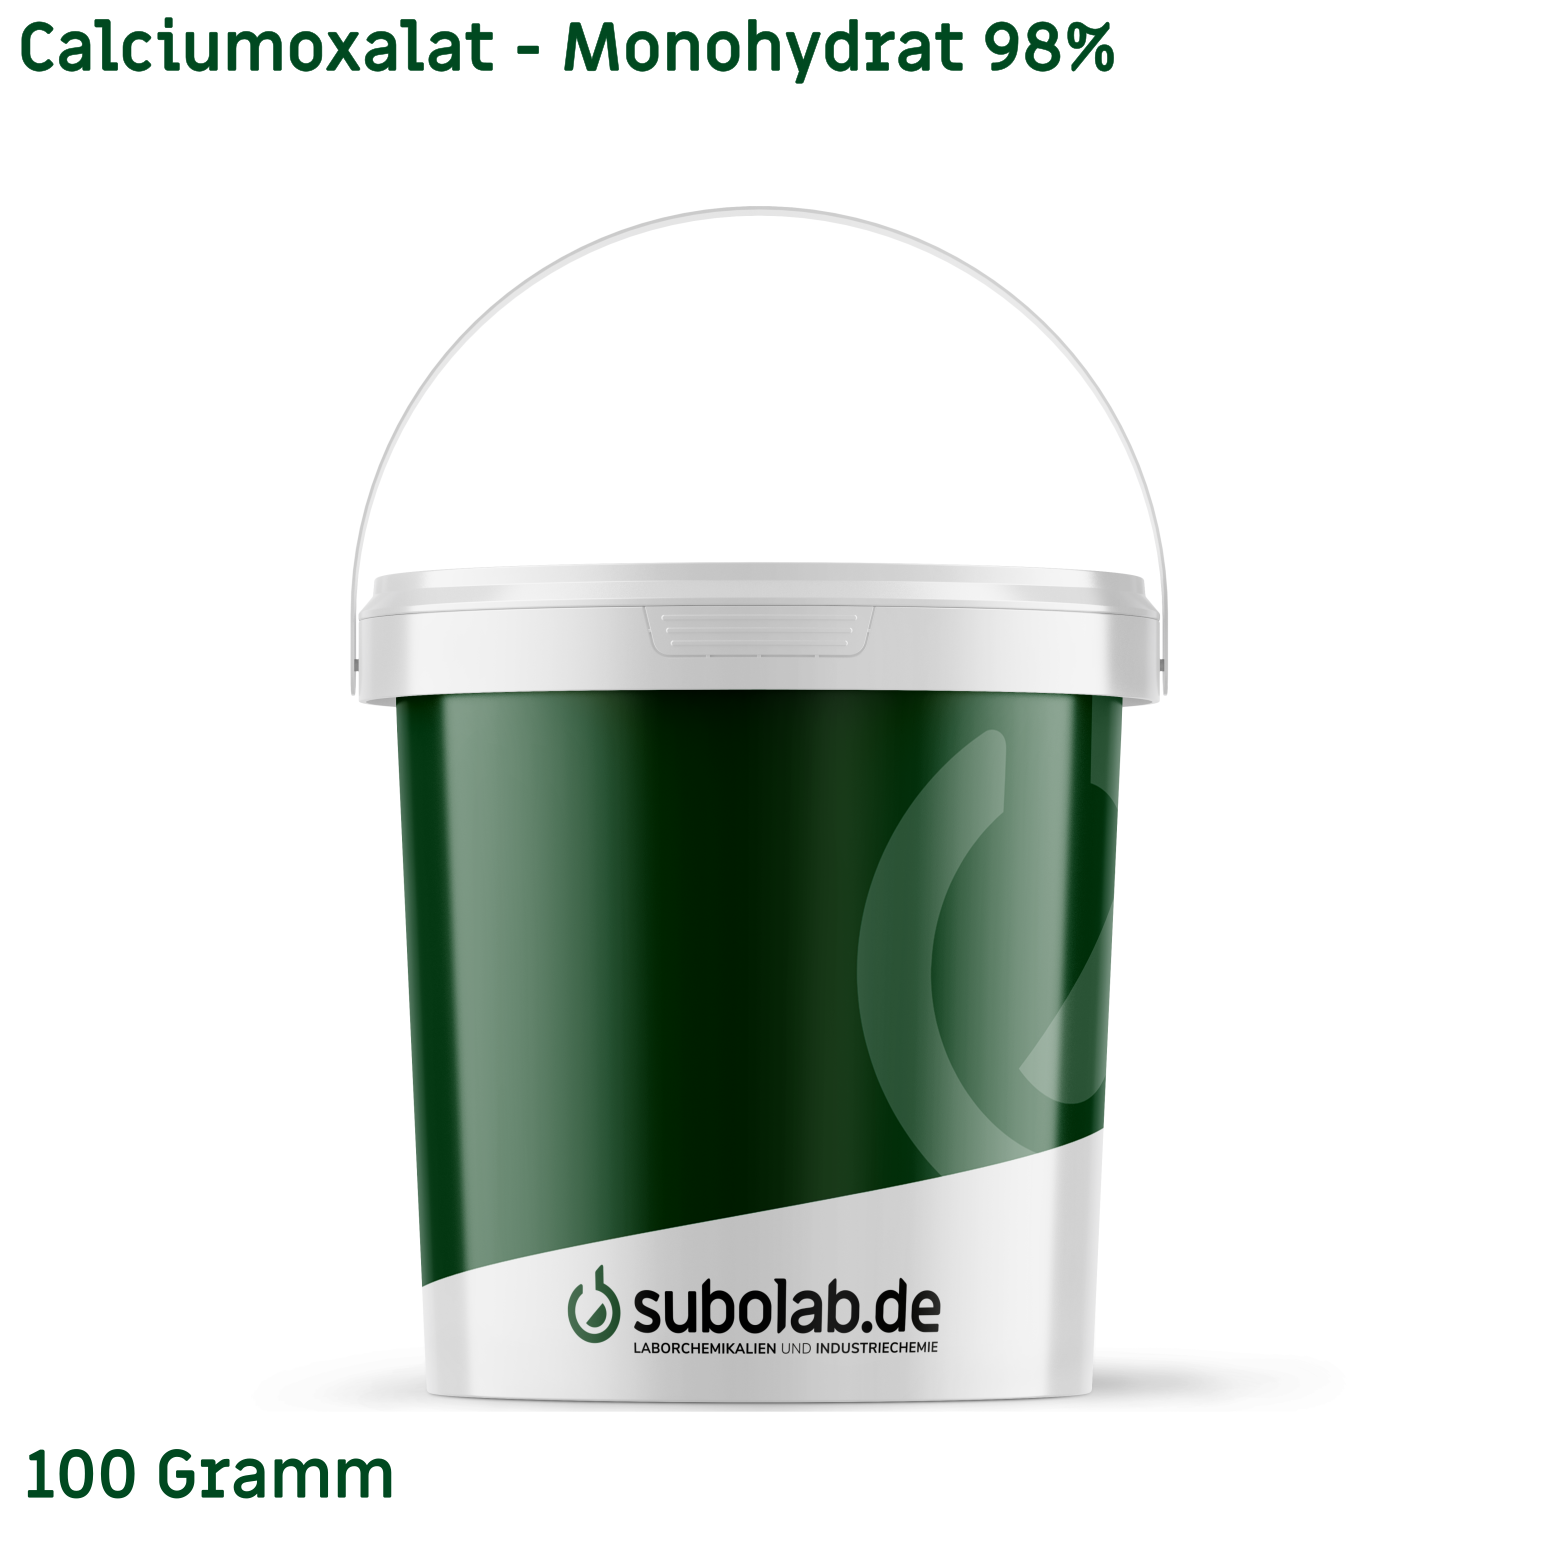 Bild von Calciumoxalat - Monohydrat 98% (100 Gramm)